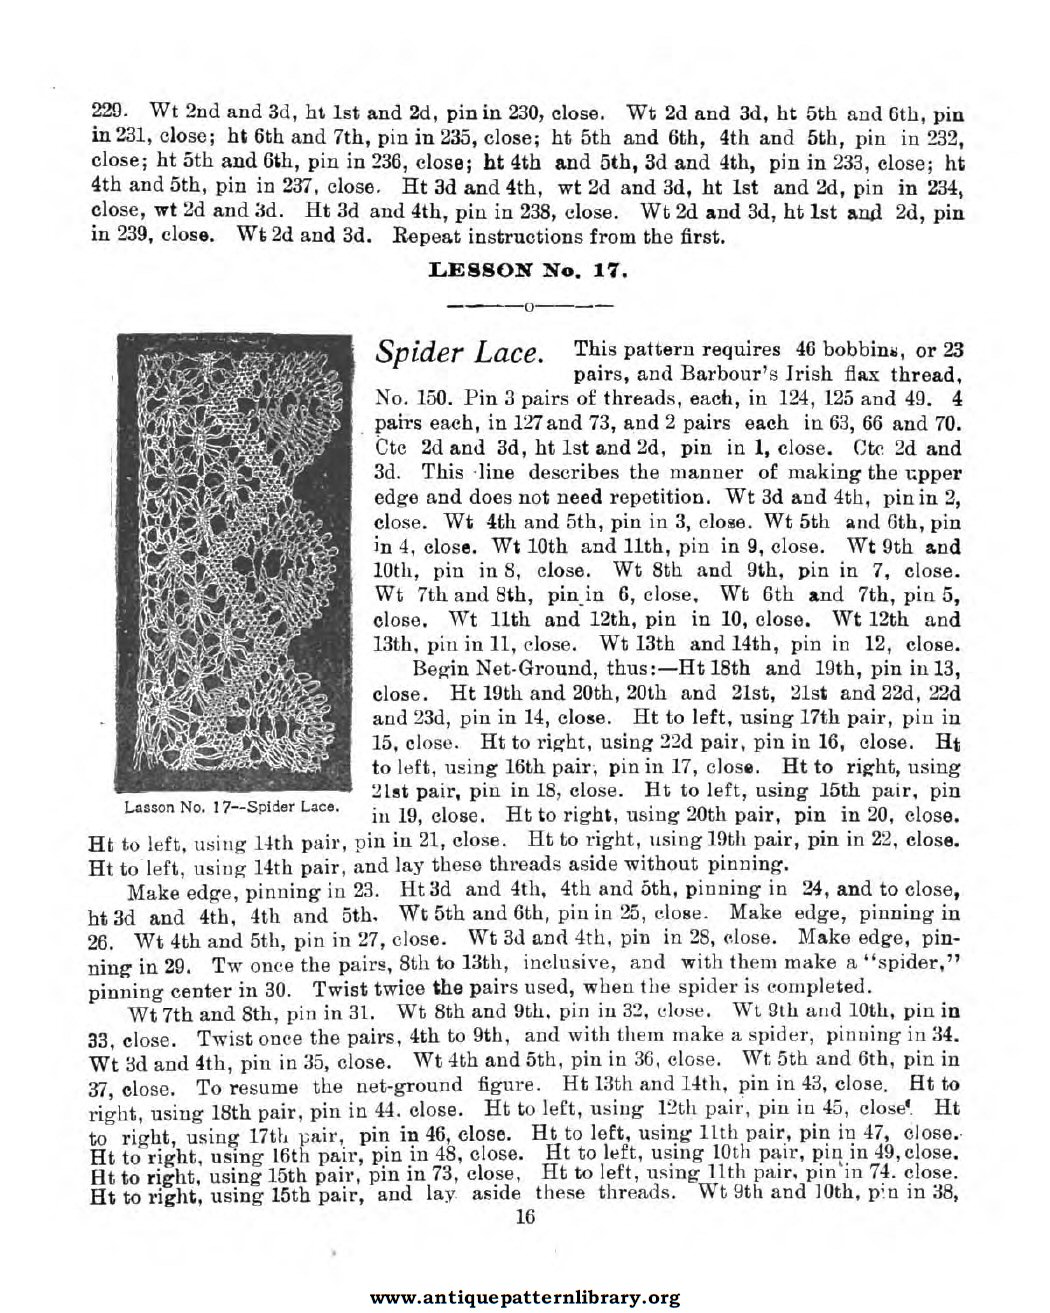 6-DA027 American Lace Maker (Illustrated) Vol. 1 and Vol. 2.